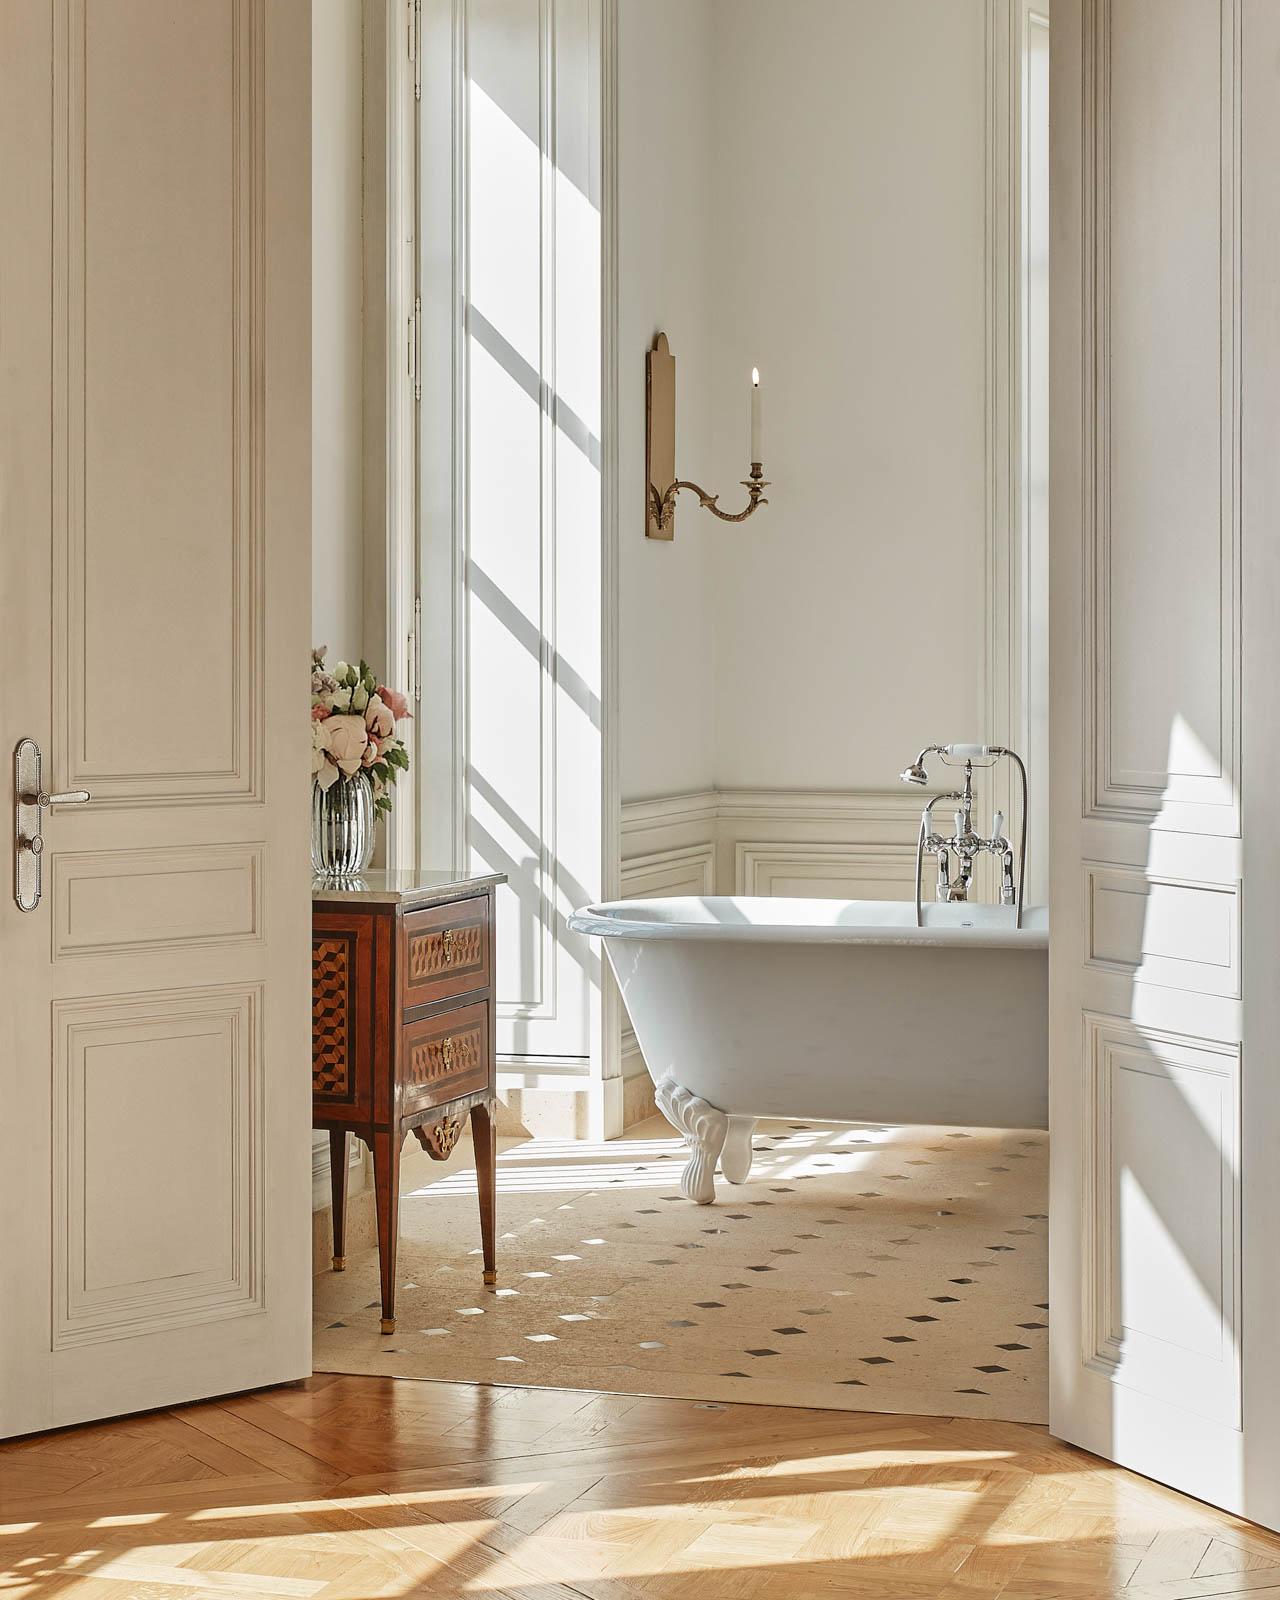 Suite Necker - Salle de bain © Renée Kemps